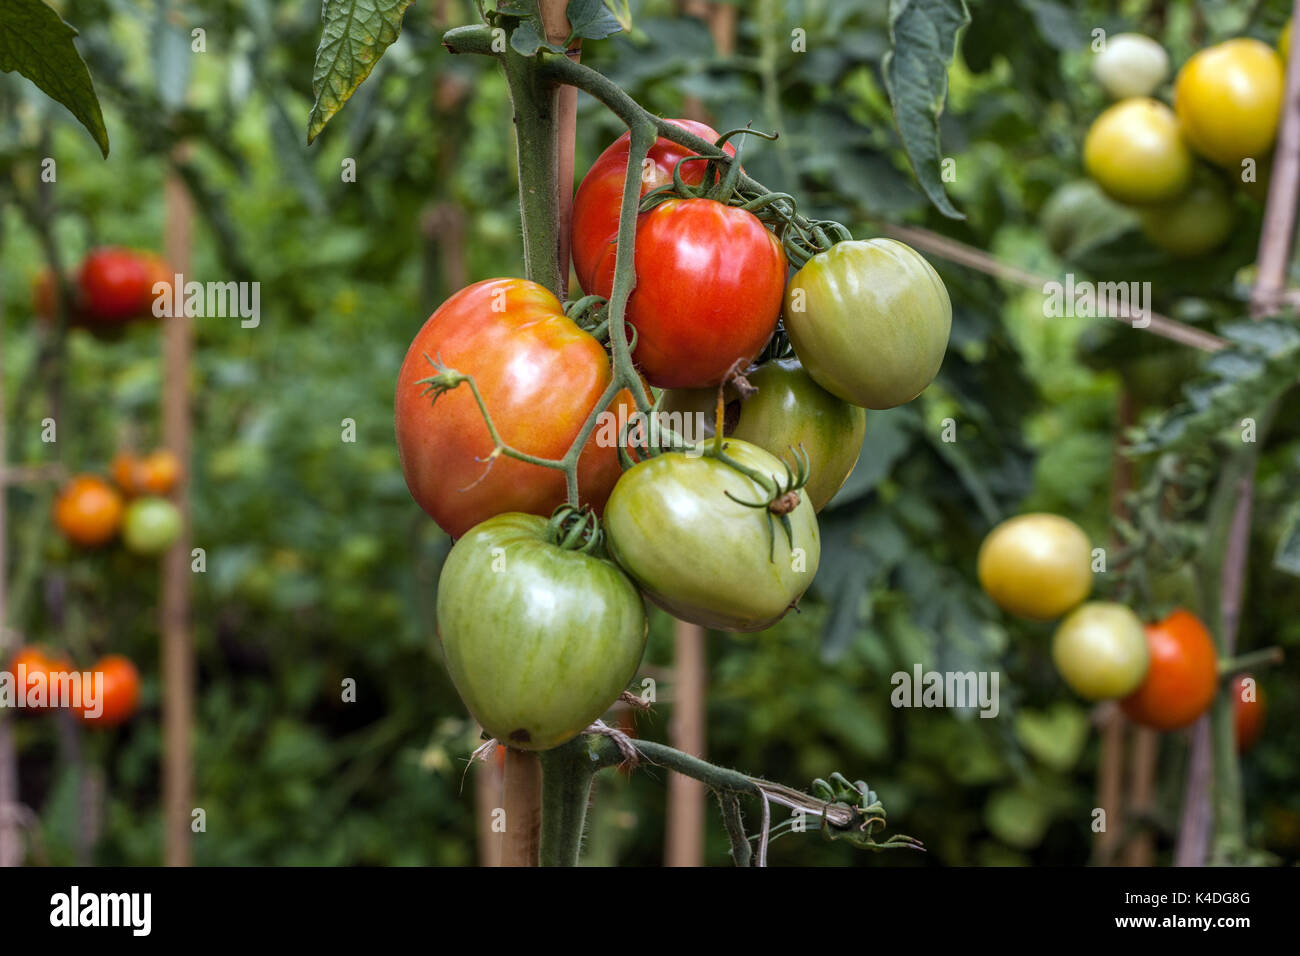 Tomate madurando tomates en la vid sobre la cabeza en el jardín tomate maduro inmaduro Foto de stock